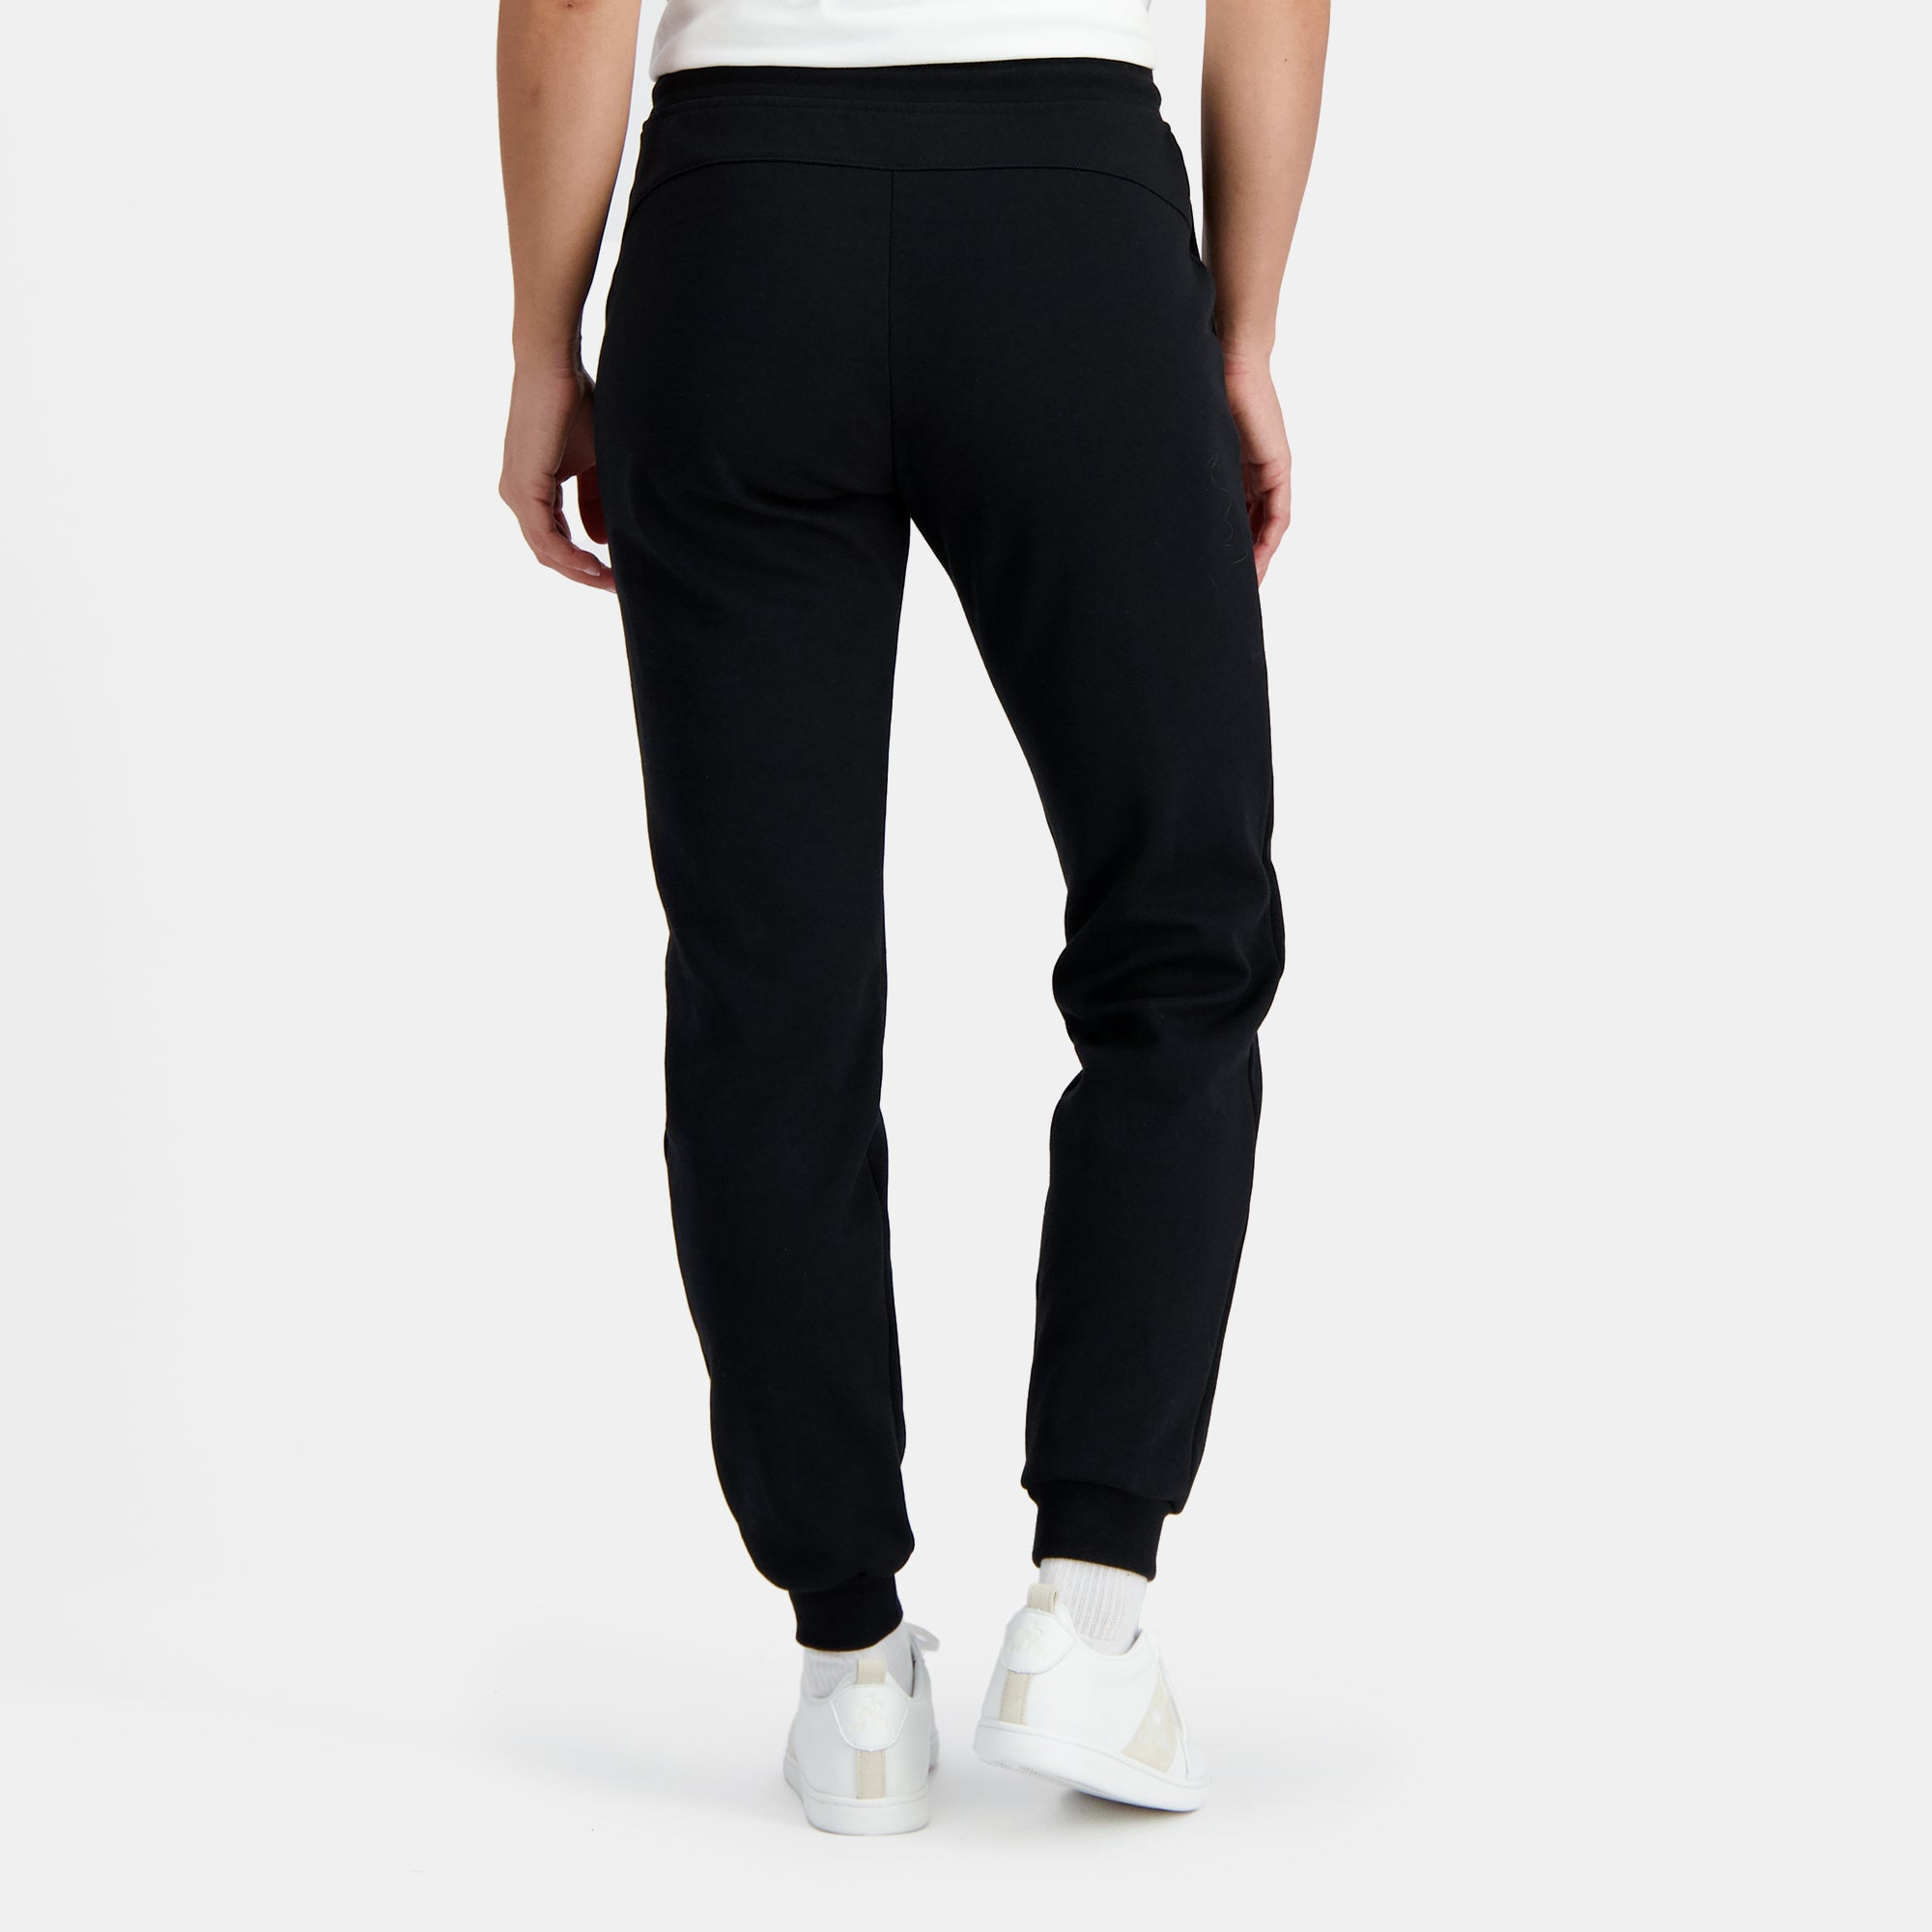 2410173-ESS Pant Regular N°1 W black  | Pantalón Regular Mujer